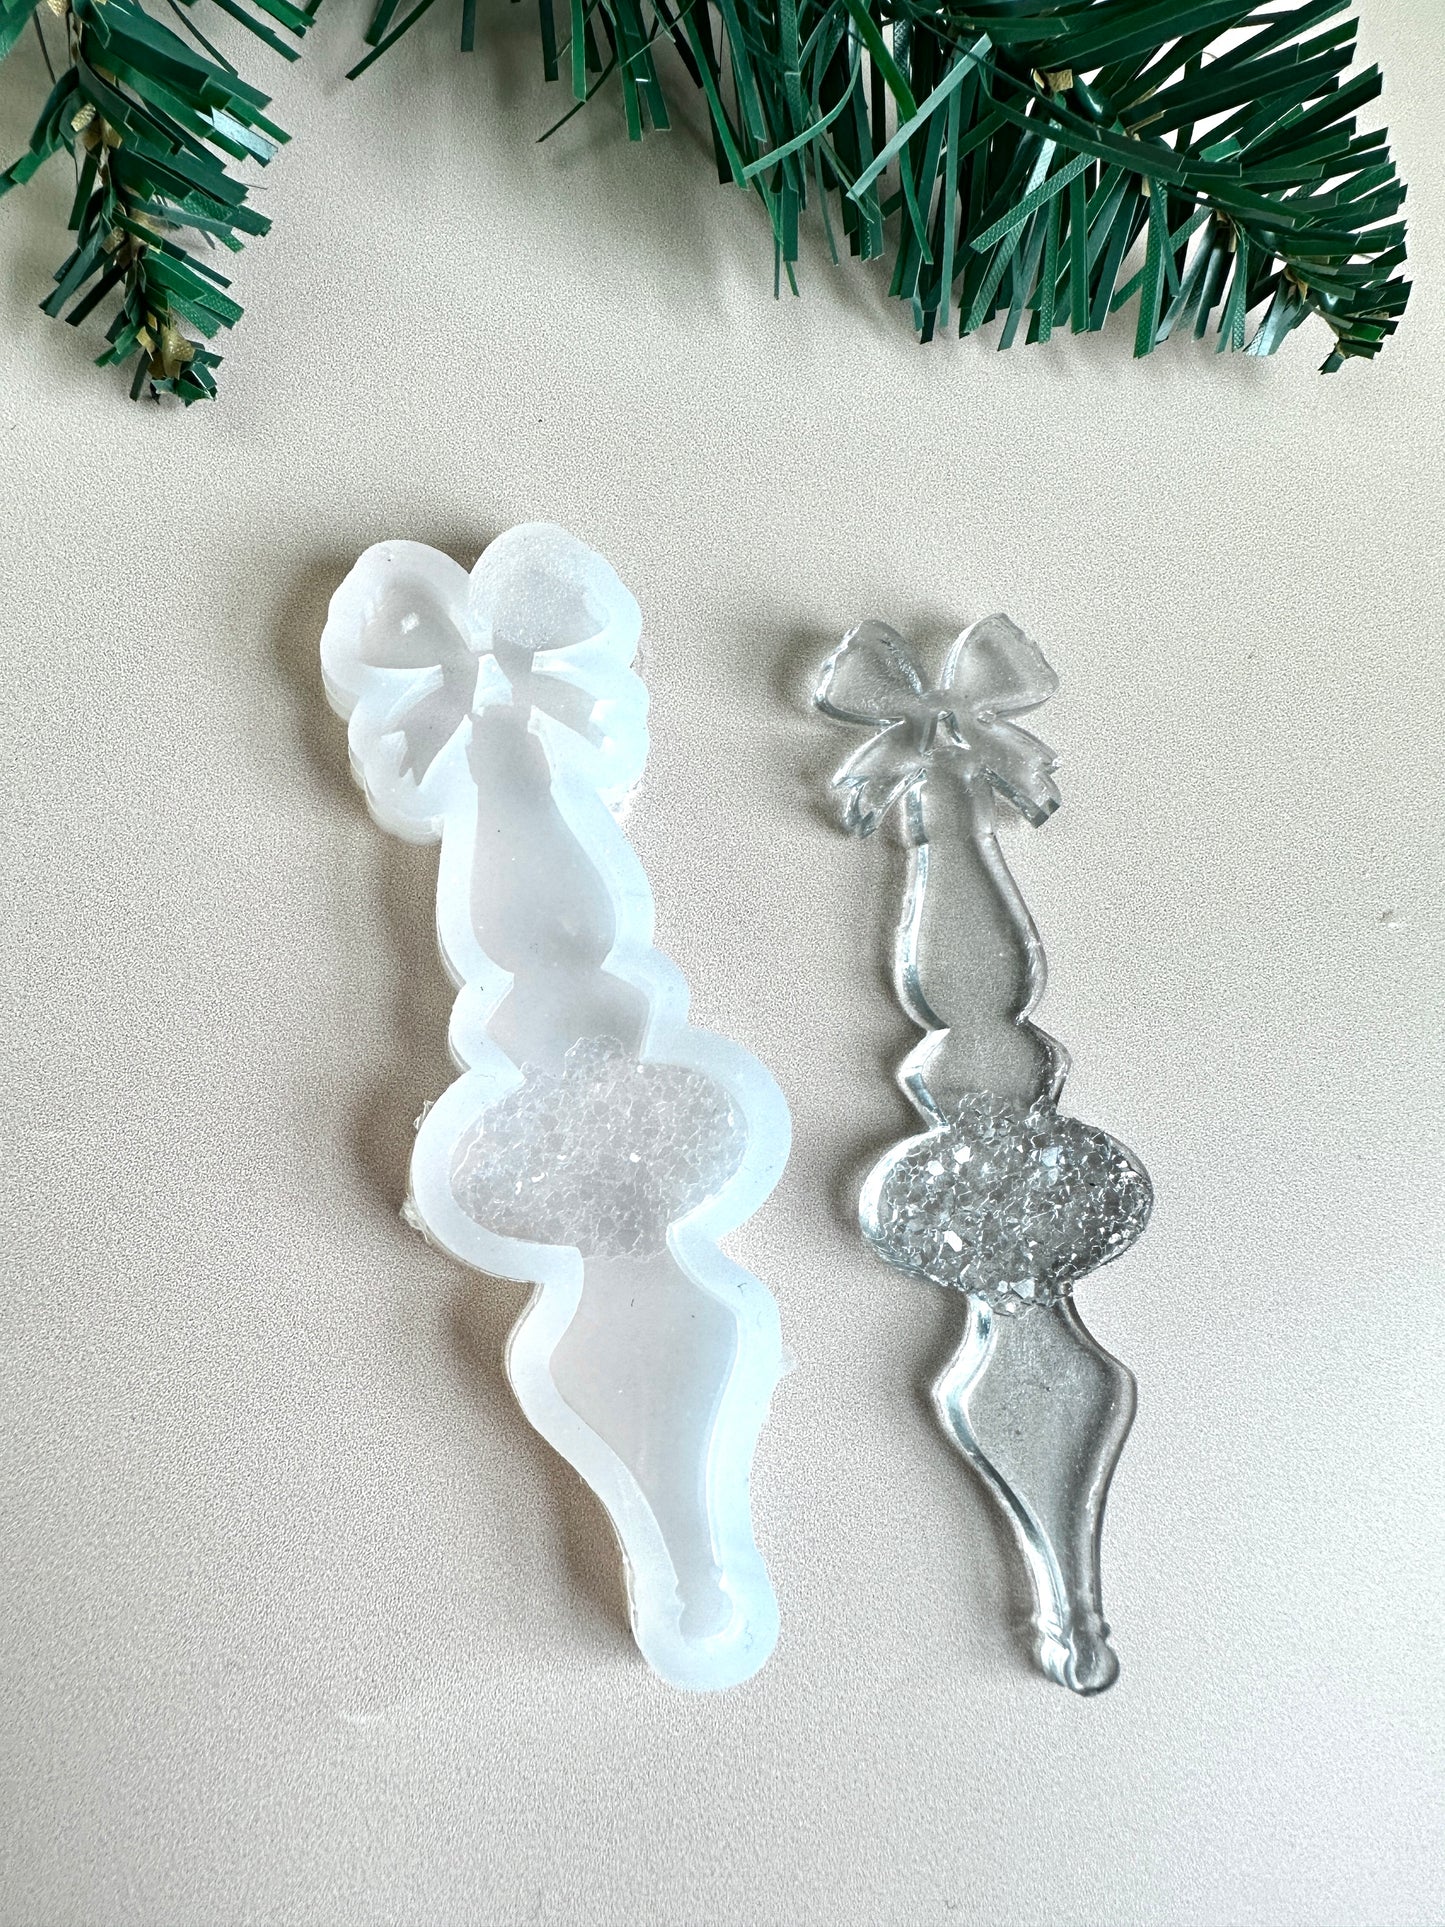 Weihnachtsbaumschmuck-Silikonform, funkelnde Kristalle im Kerzendesign, ideal für Weihnachten, einzigartiges Geschenk für Künstler